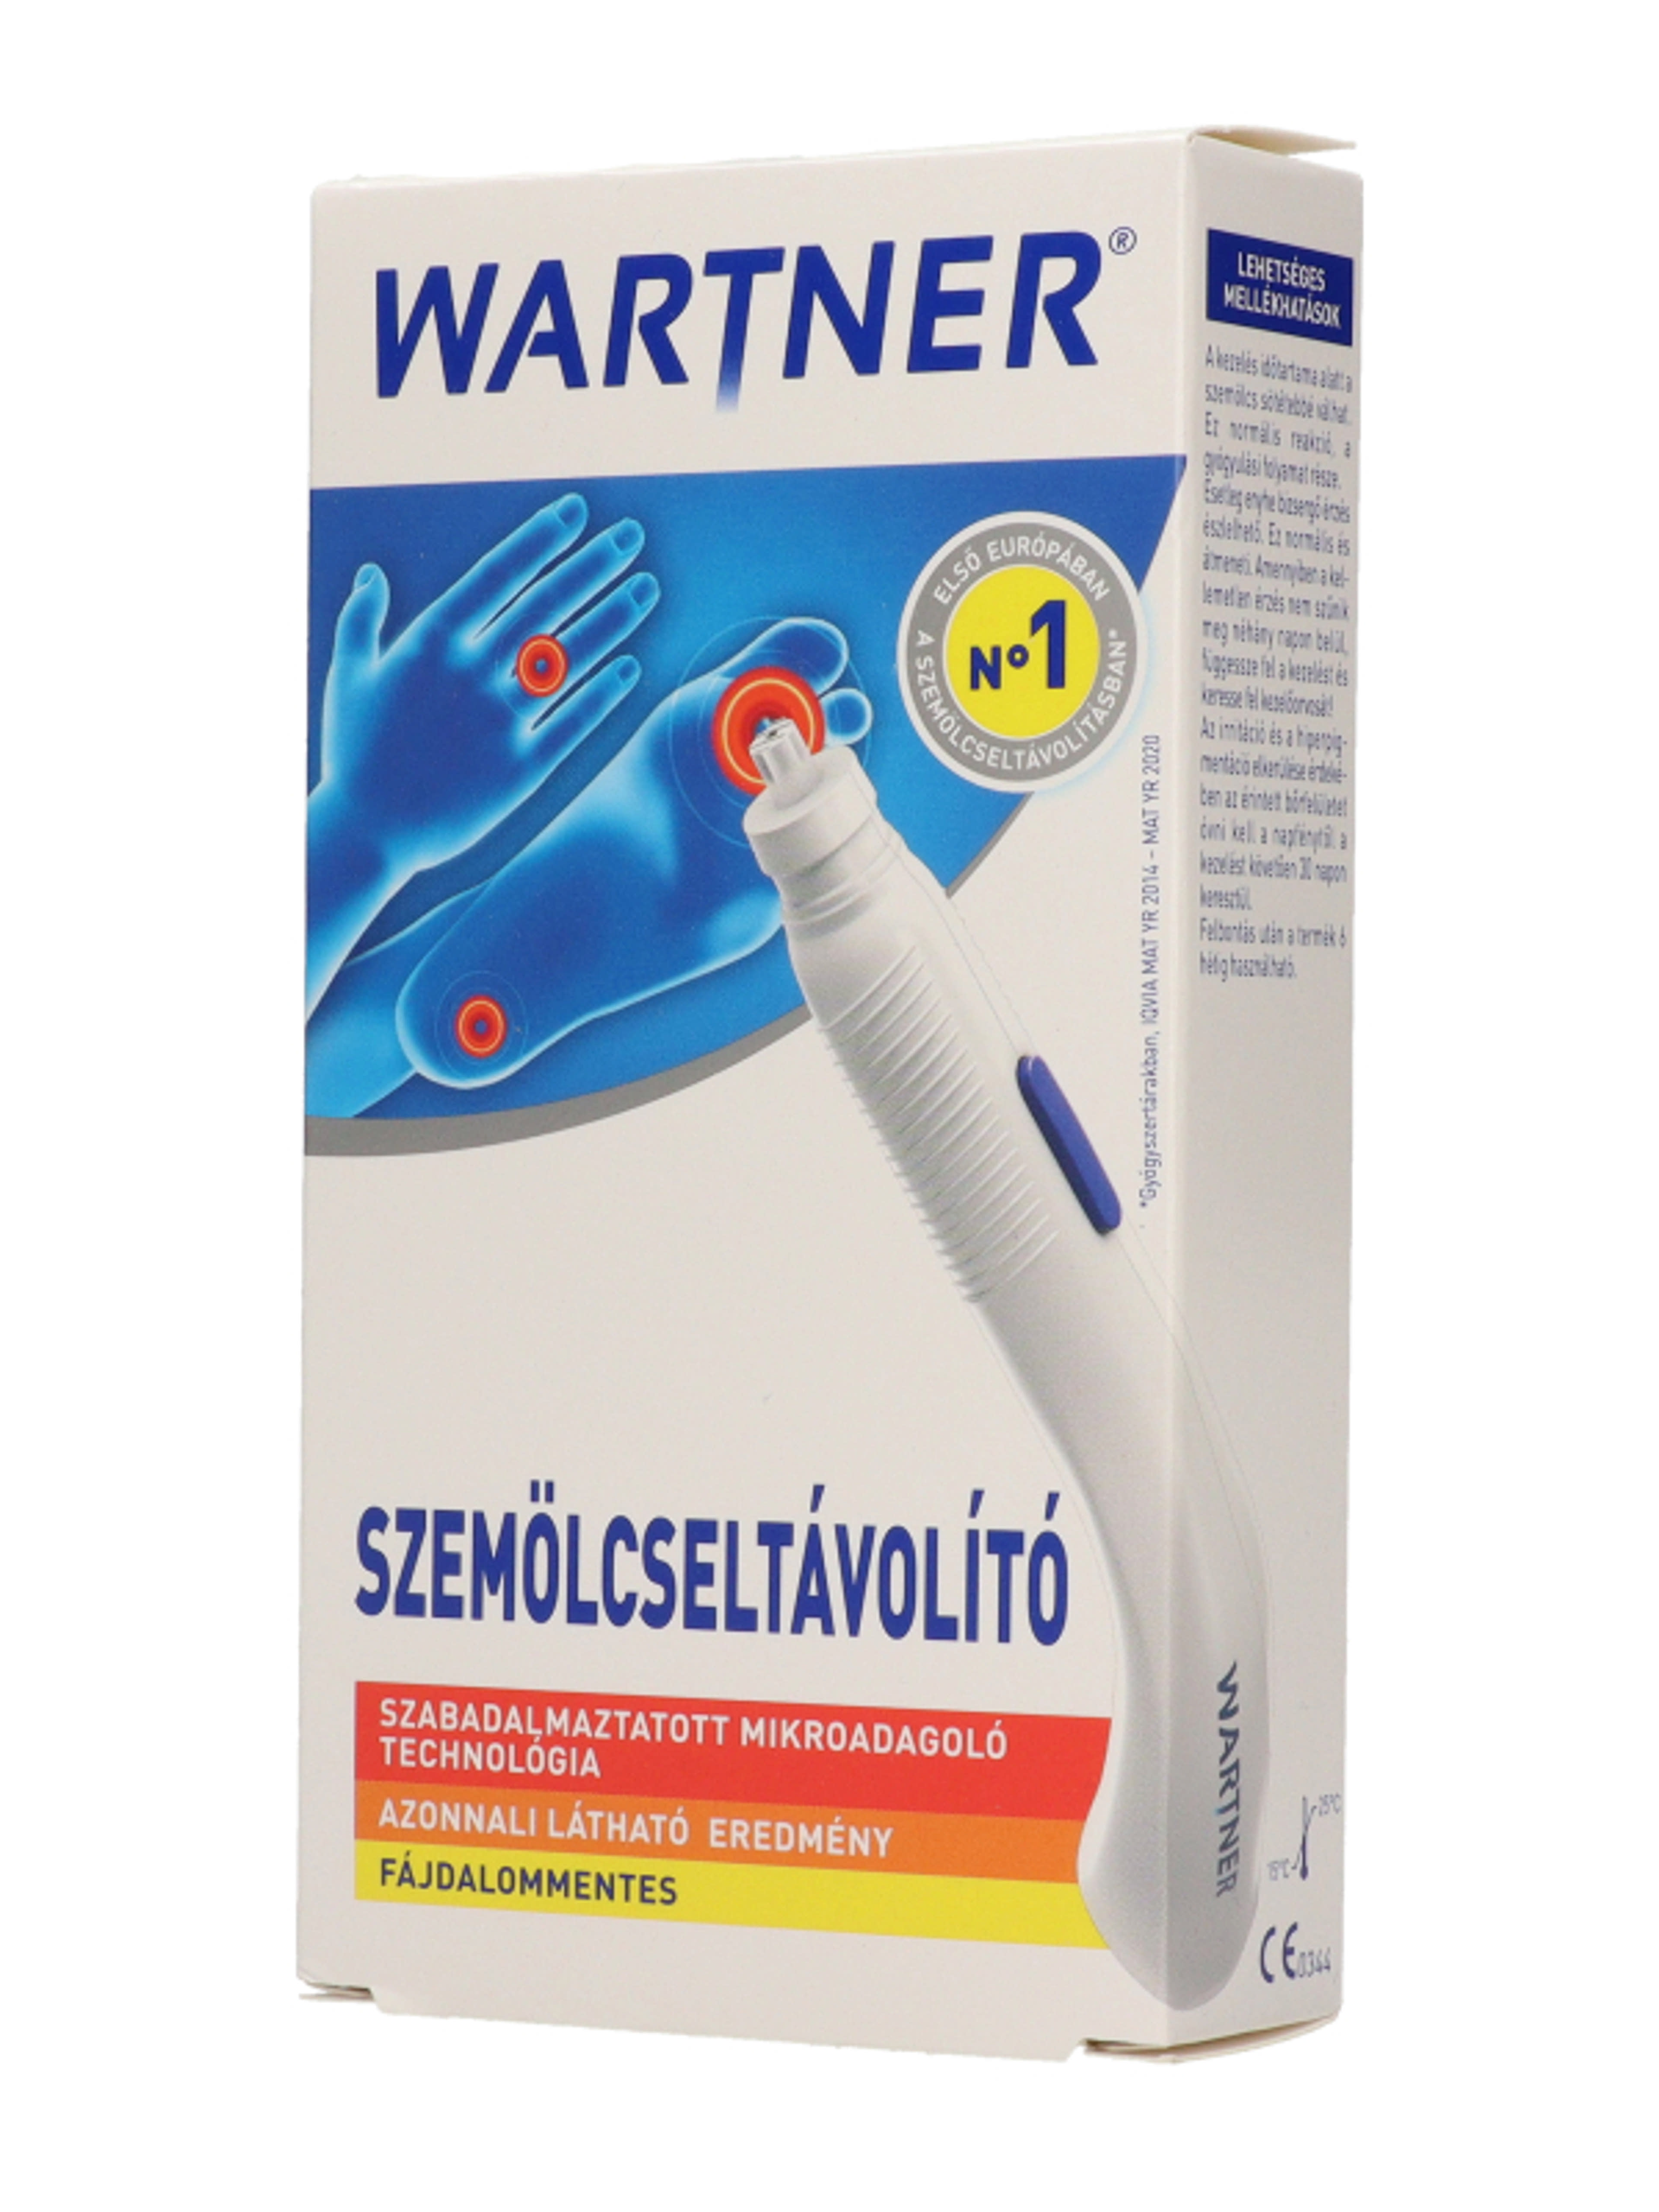 Wartner szemölcseltávolító stift 2.0 - 1,5 ml-3